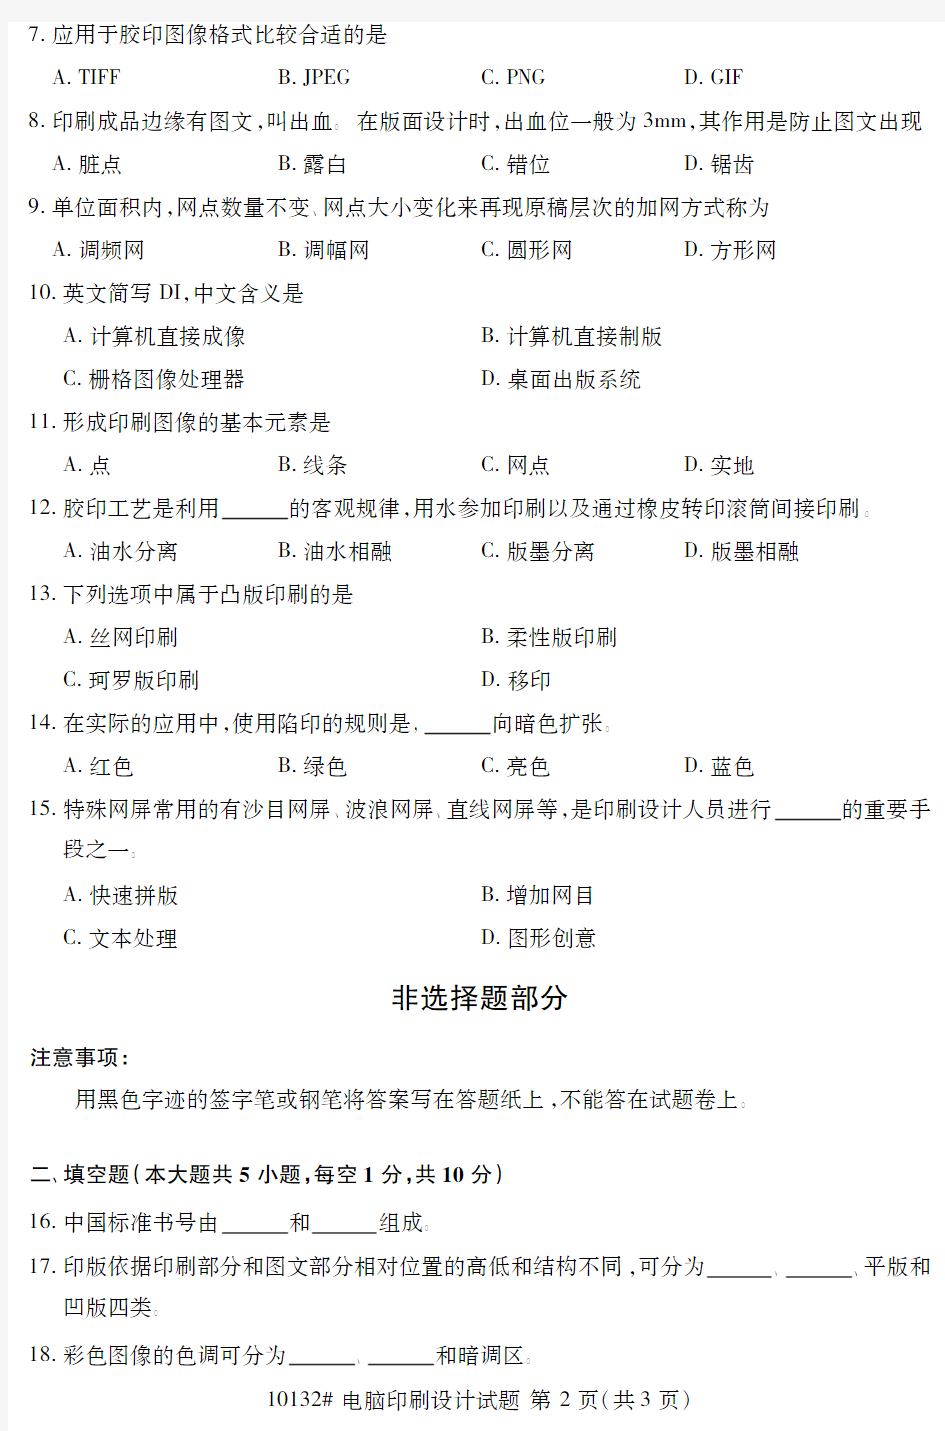 自学考试_浙江省2018年4月高等教育自学考试电脑印刷设计试题(10132)